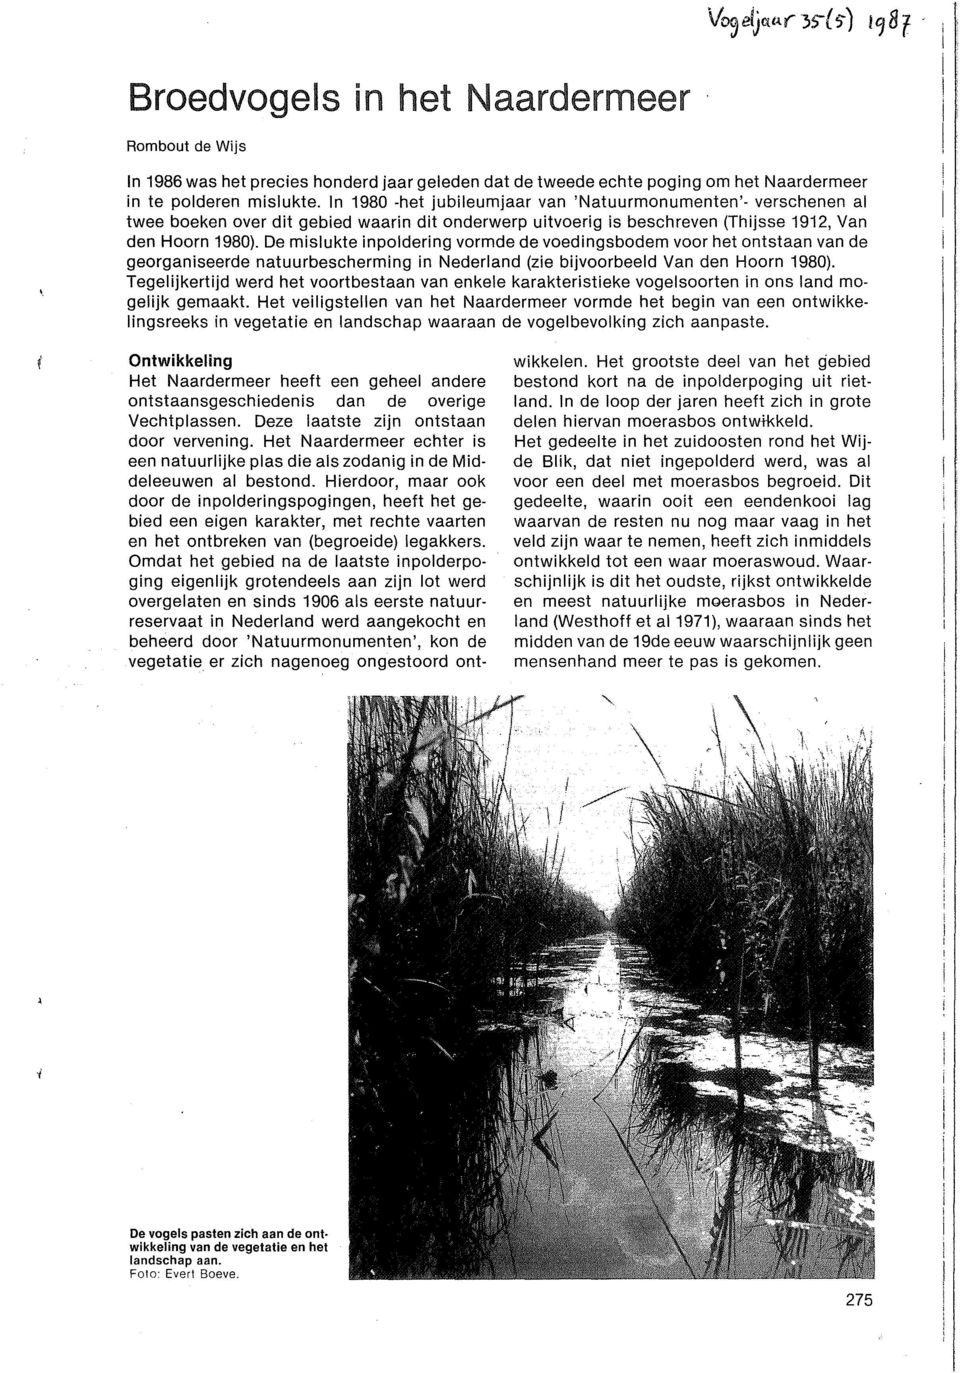 De mislukte inpoldering vormde de voedingsbodem voor het ontstaan van de georganiseerde natuurbescherming in Nederland (zie bijvoorbeeld Van den Hoorn 1980).